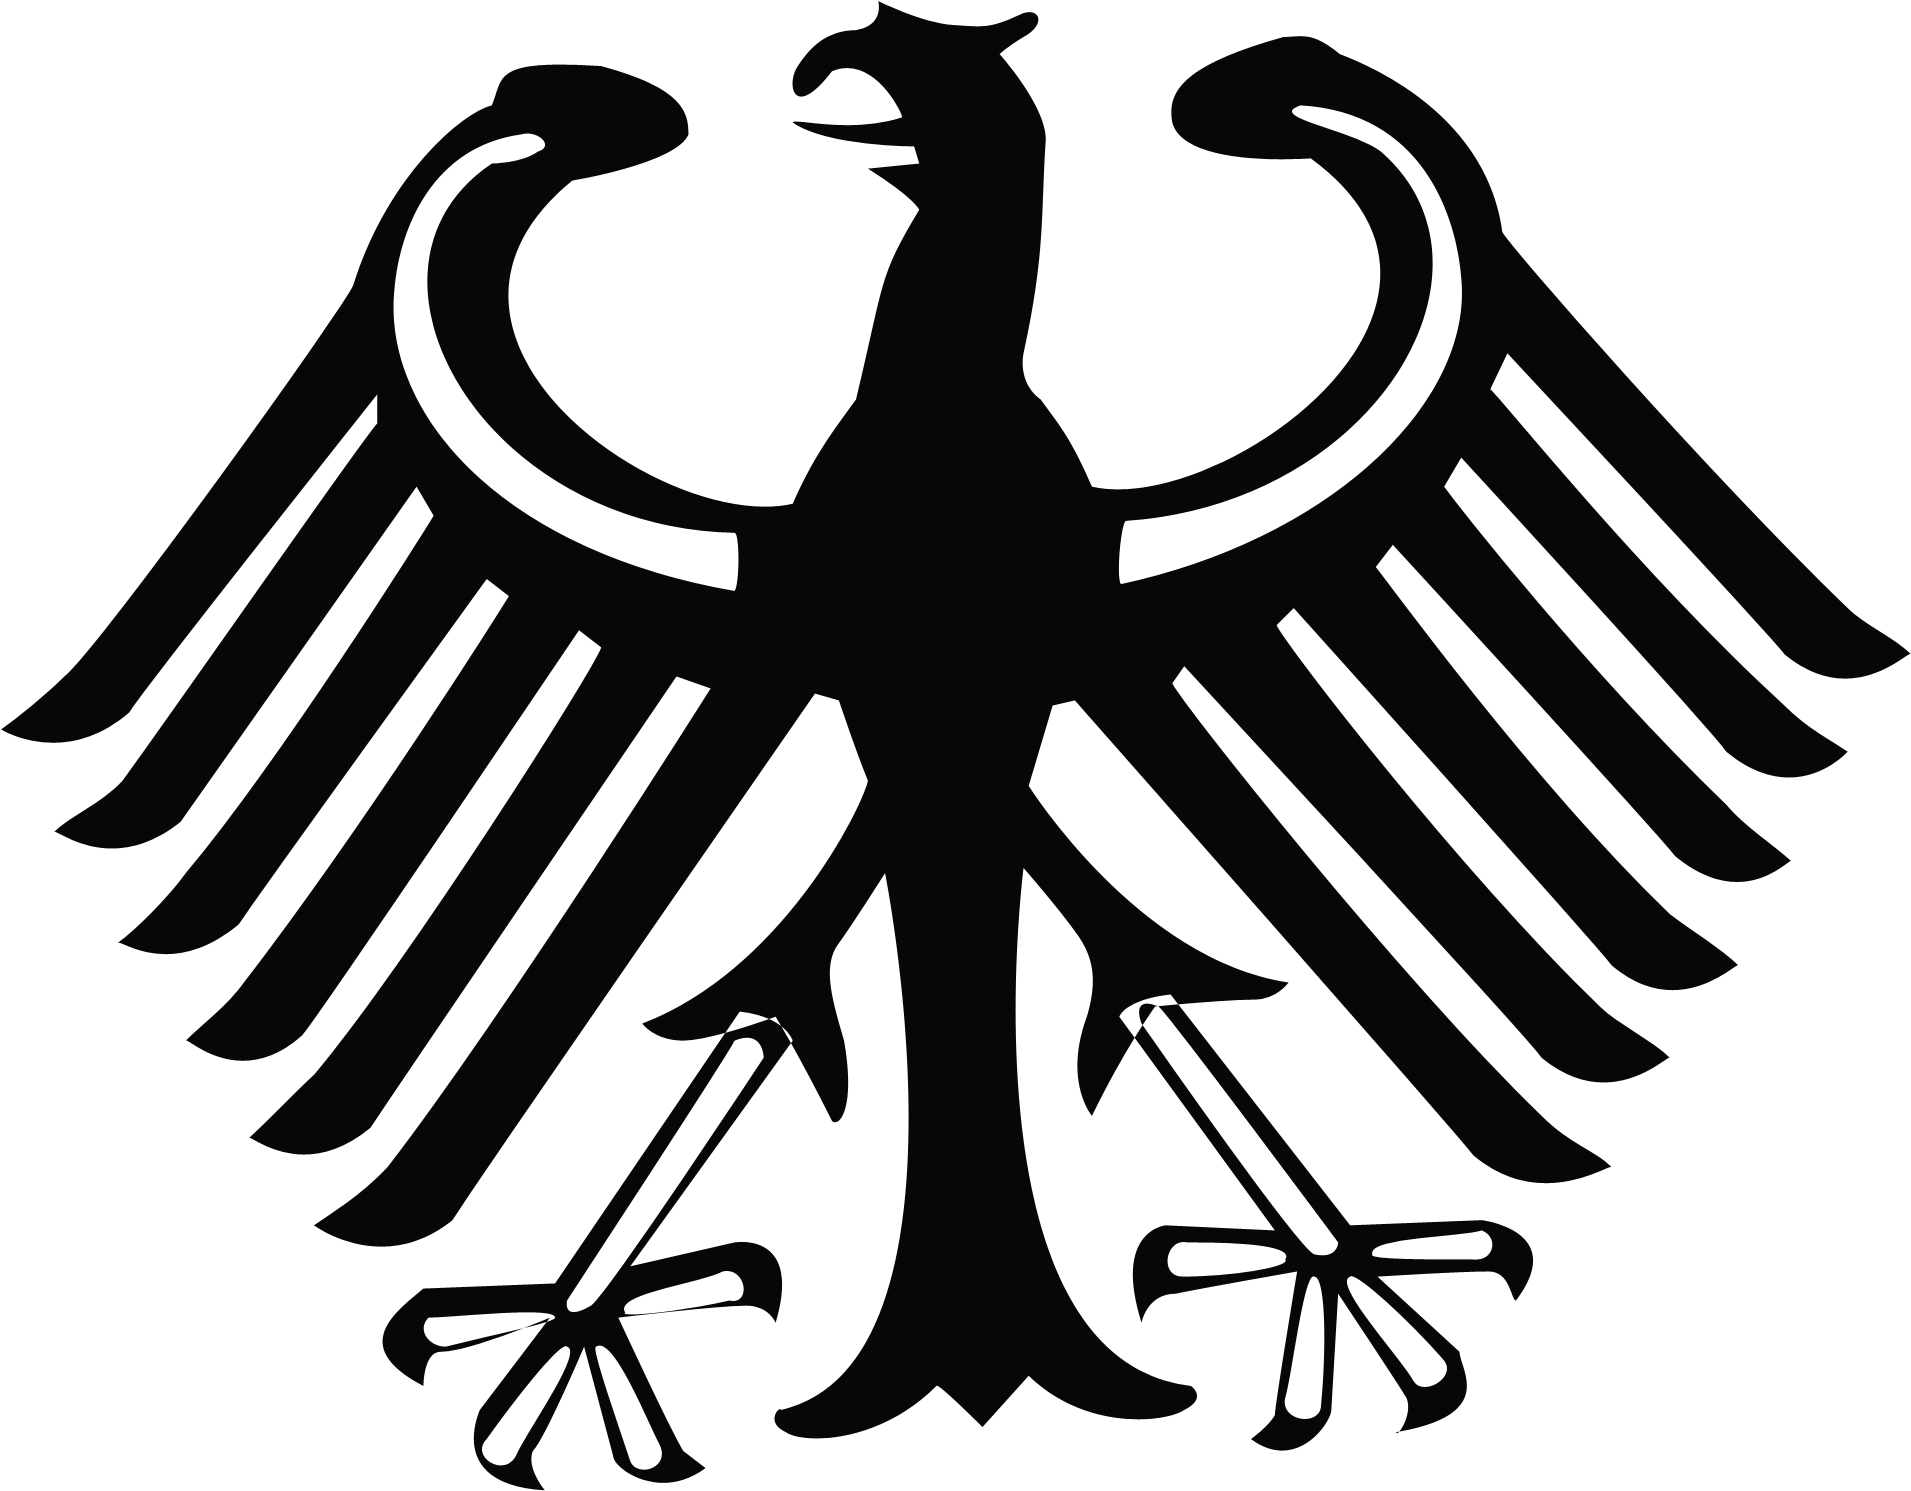 Орел изображение символ